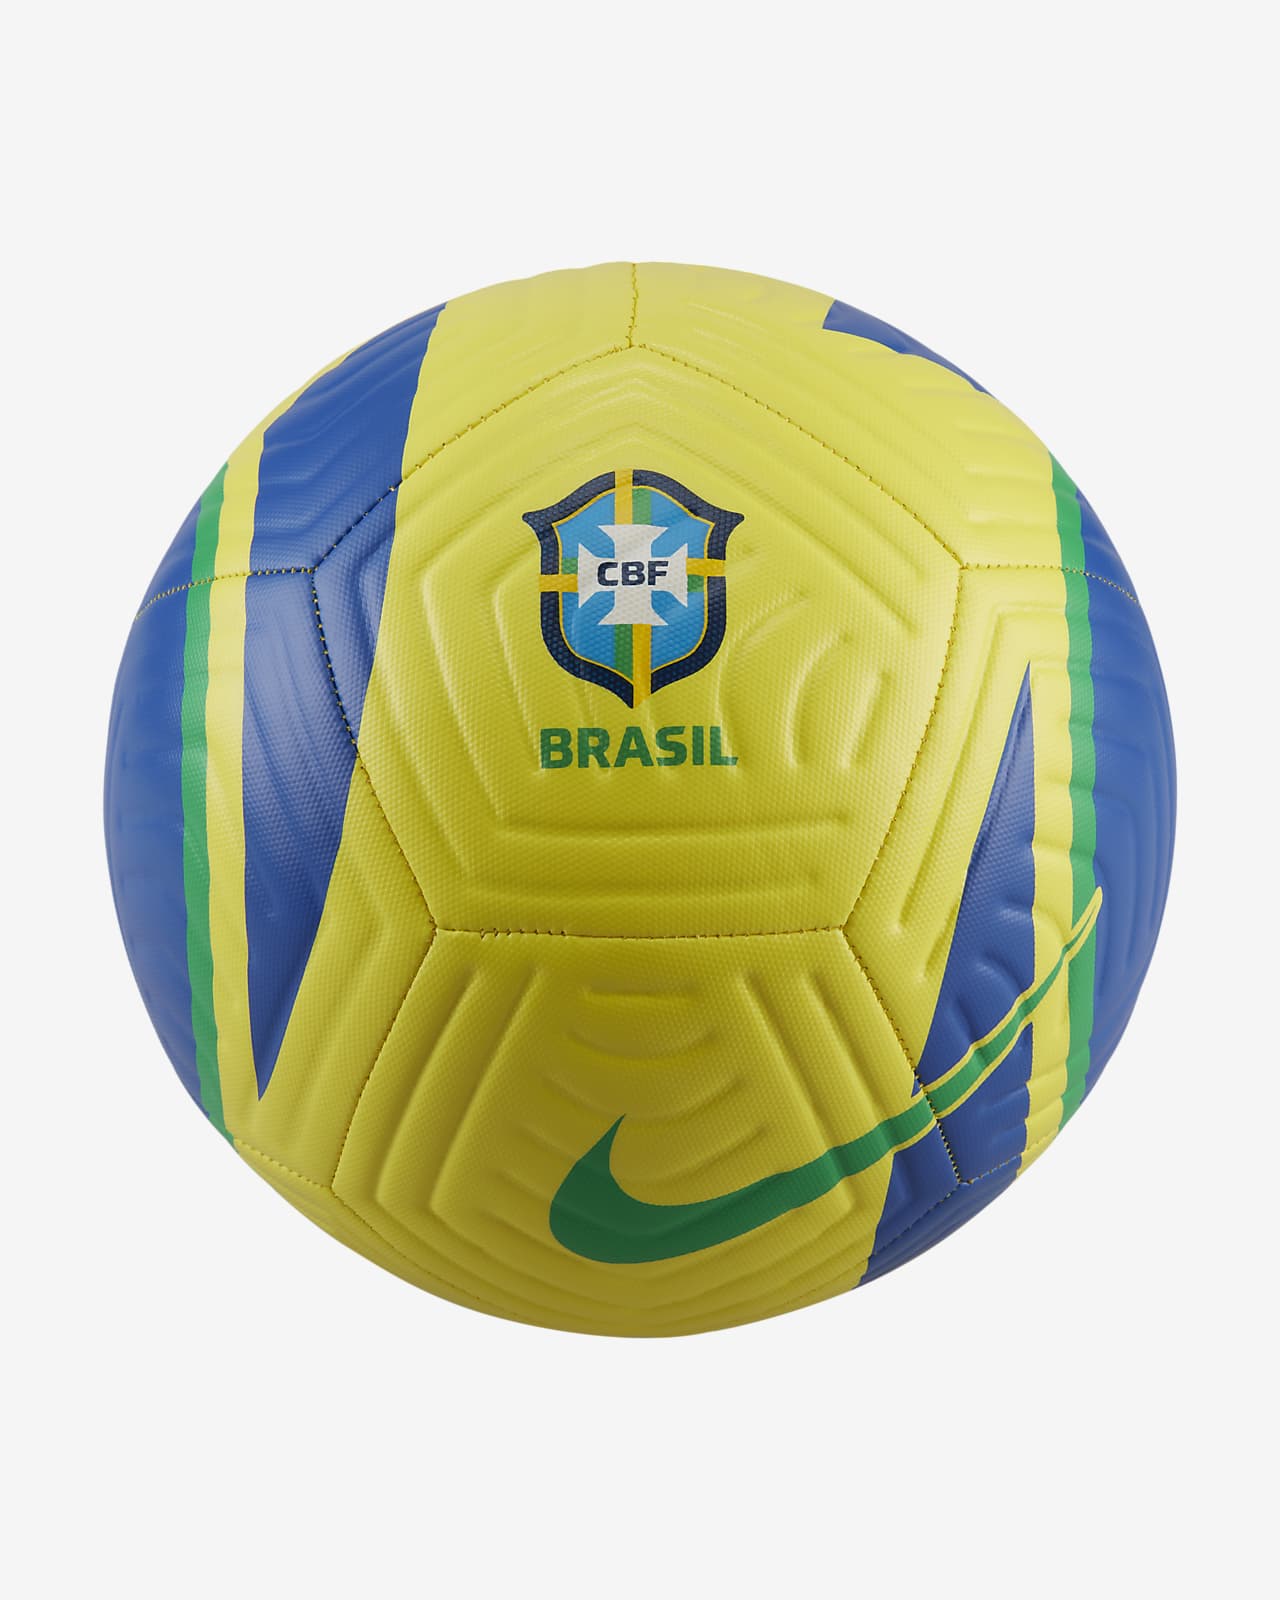 Brazil Academy Soccer Ball.